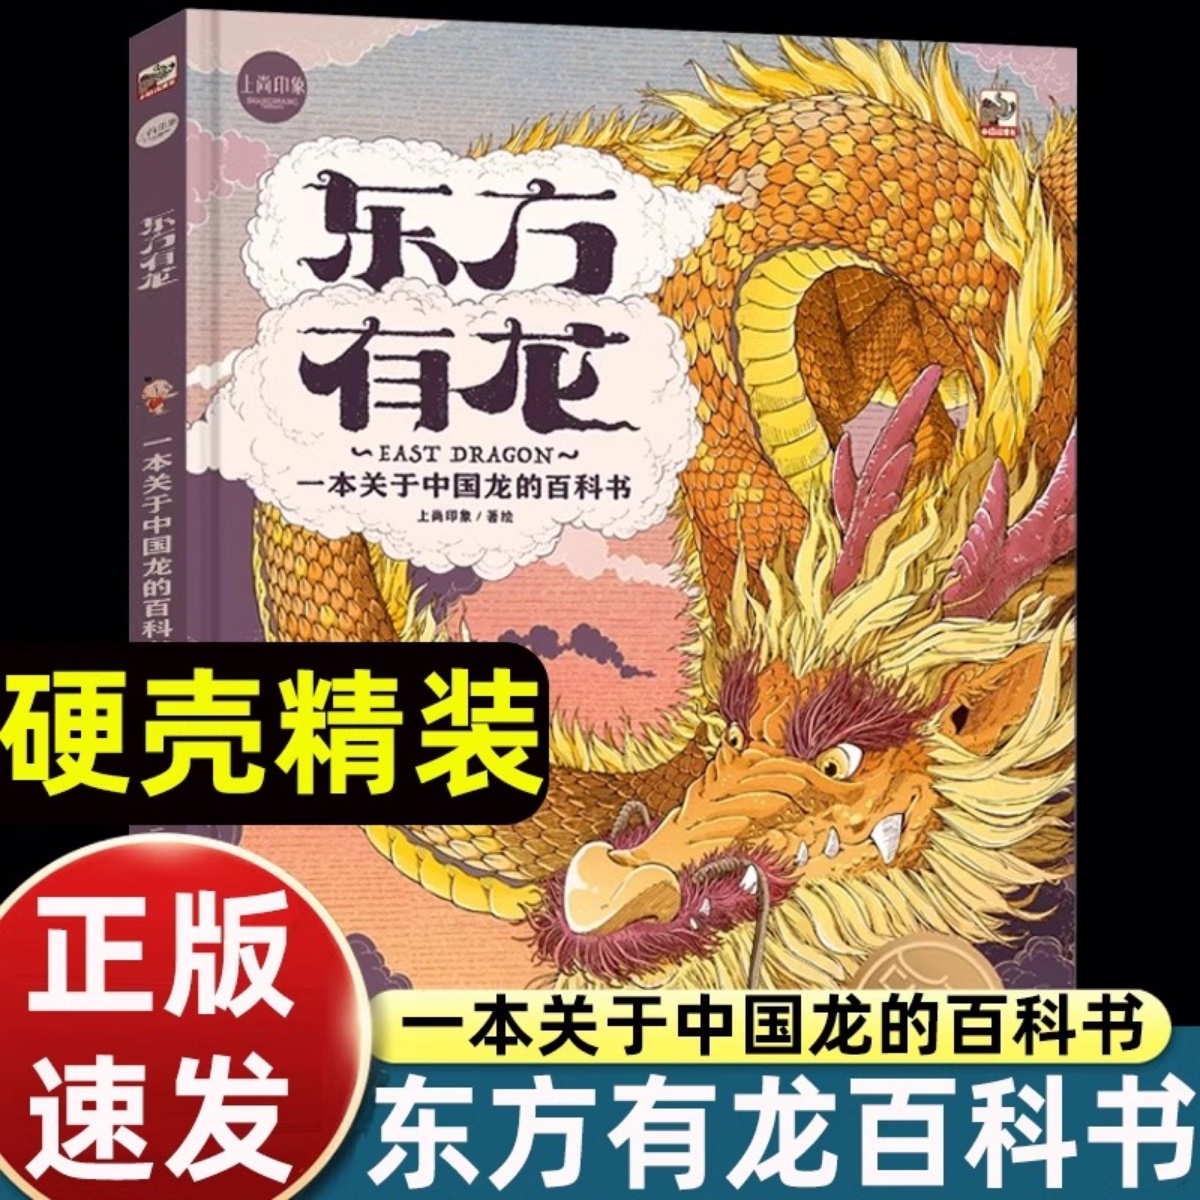 东方有龙：一本关于中国龙的百科书好玩有趣【新品首发】